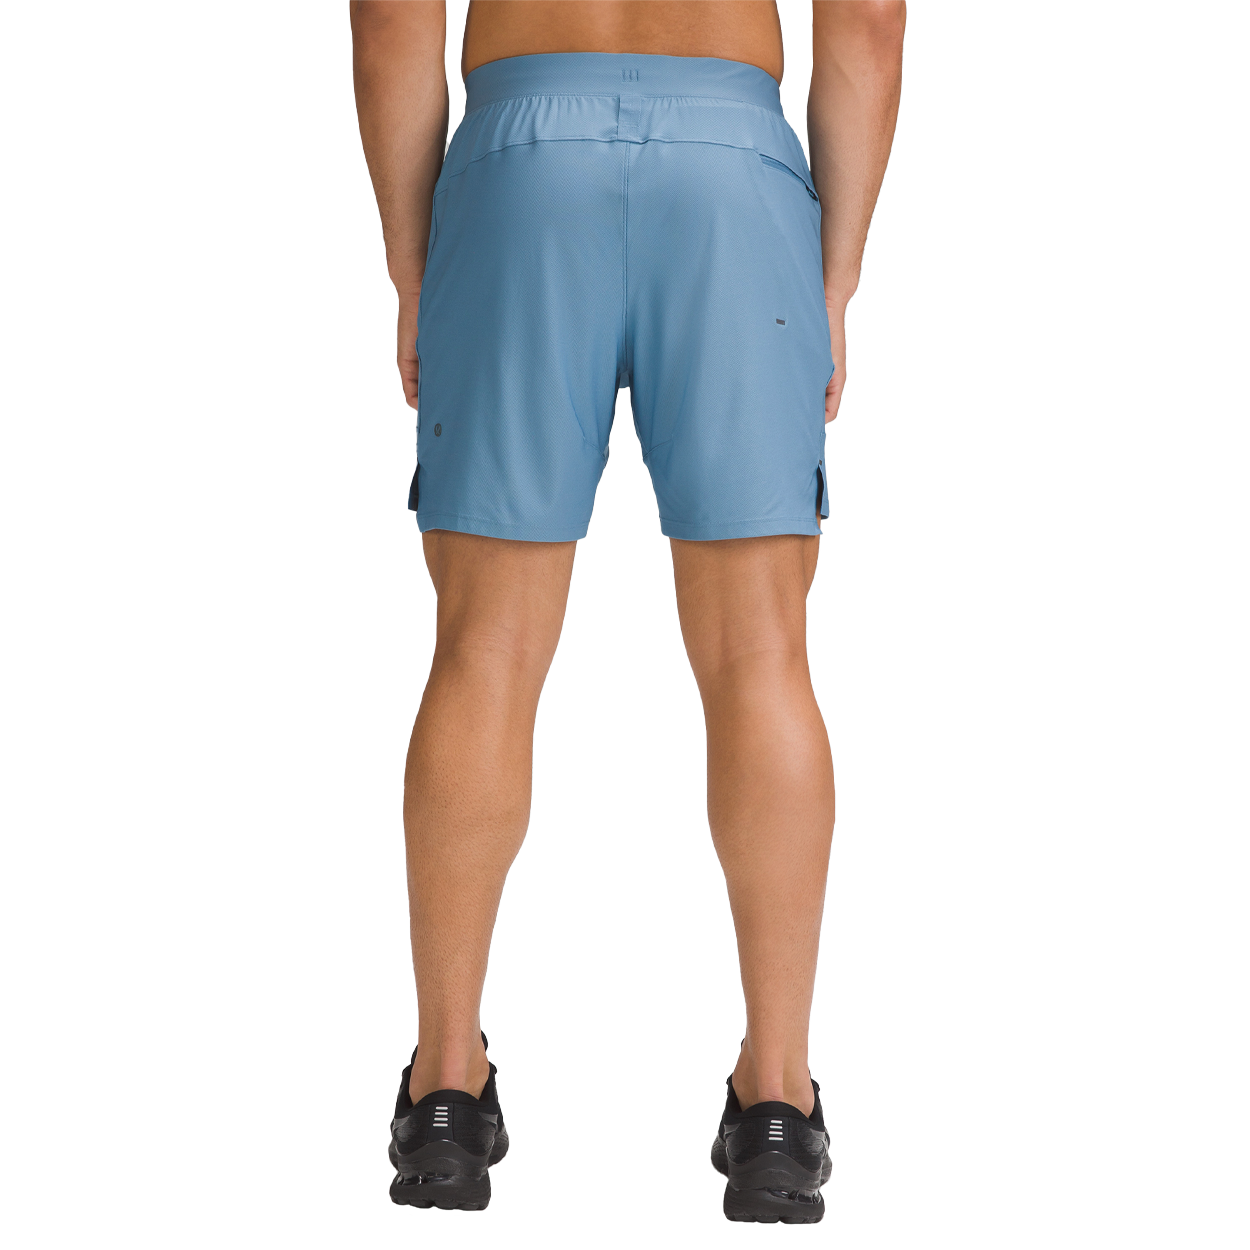 Men's Running Shorts: Liner, Linerless & 2-in-1